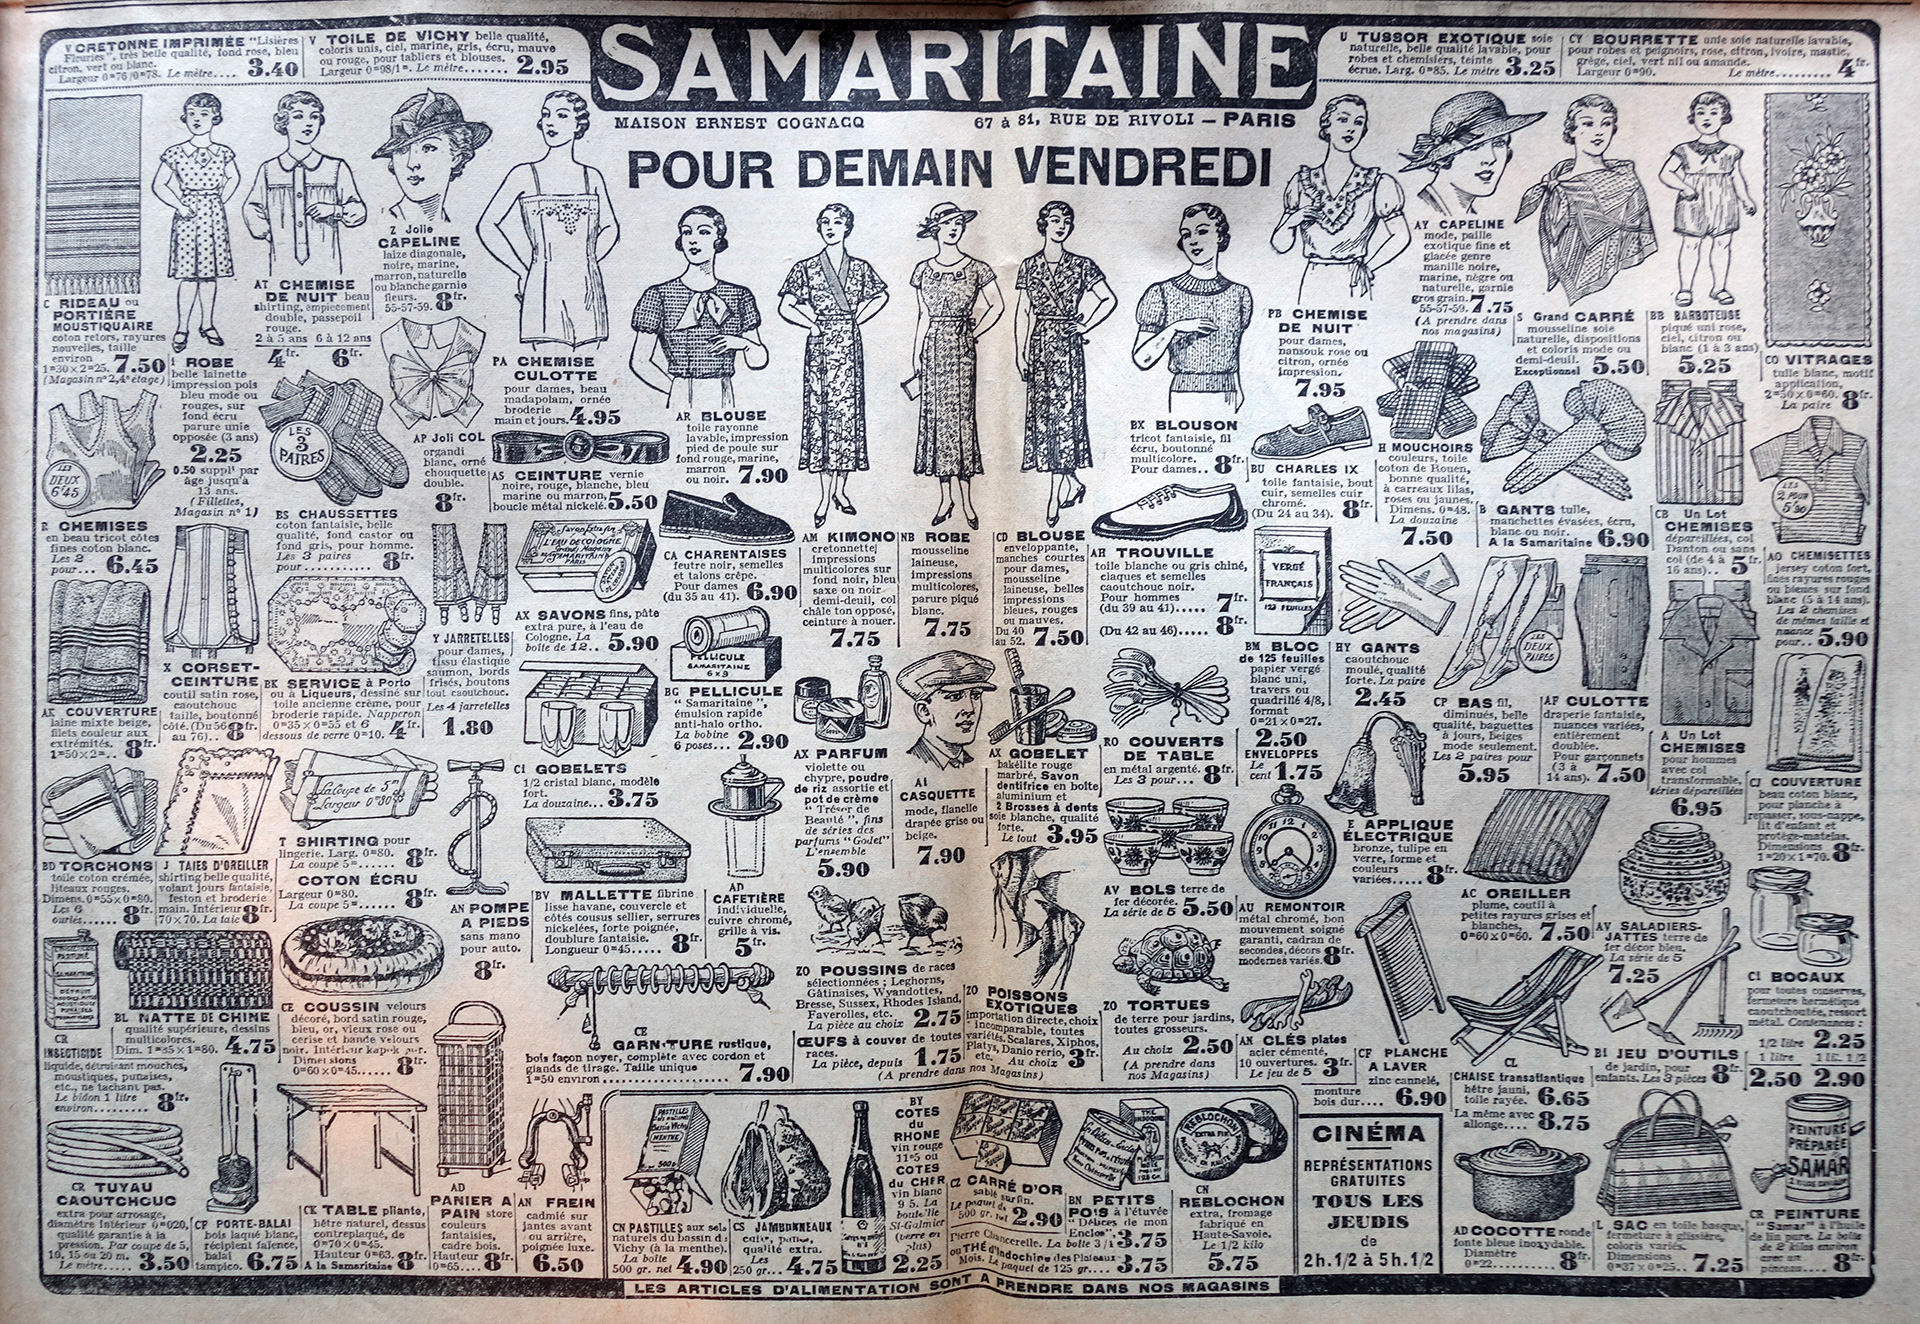 Samaritaine-publicite-journal-le-petit-parisien-1936-site-photogriffon.jpg